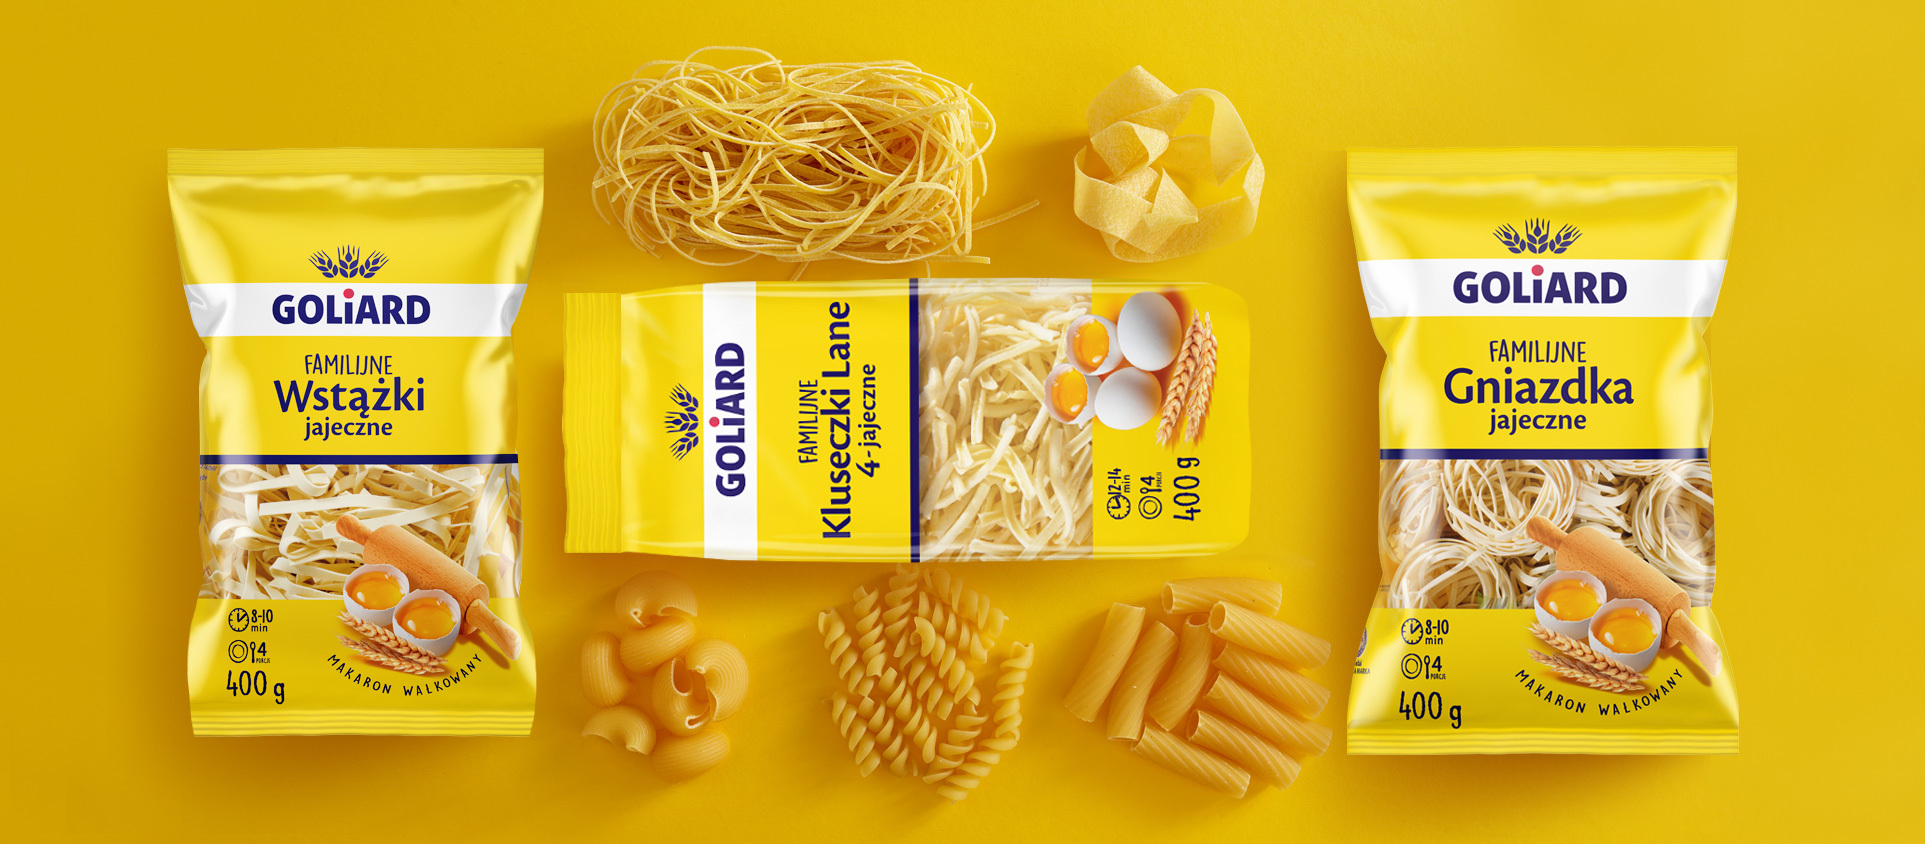 Pasta packaging design for Goliard - line of egg pasta.